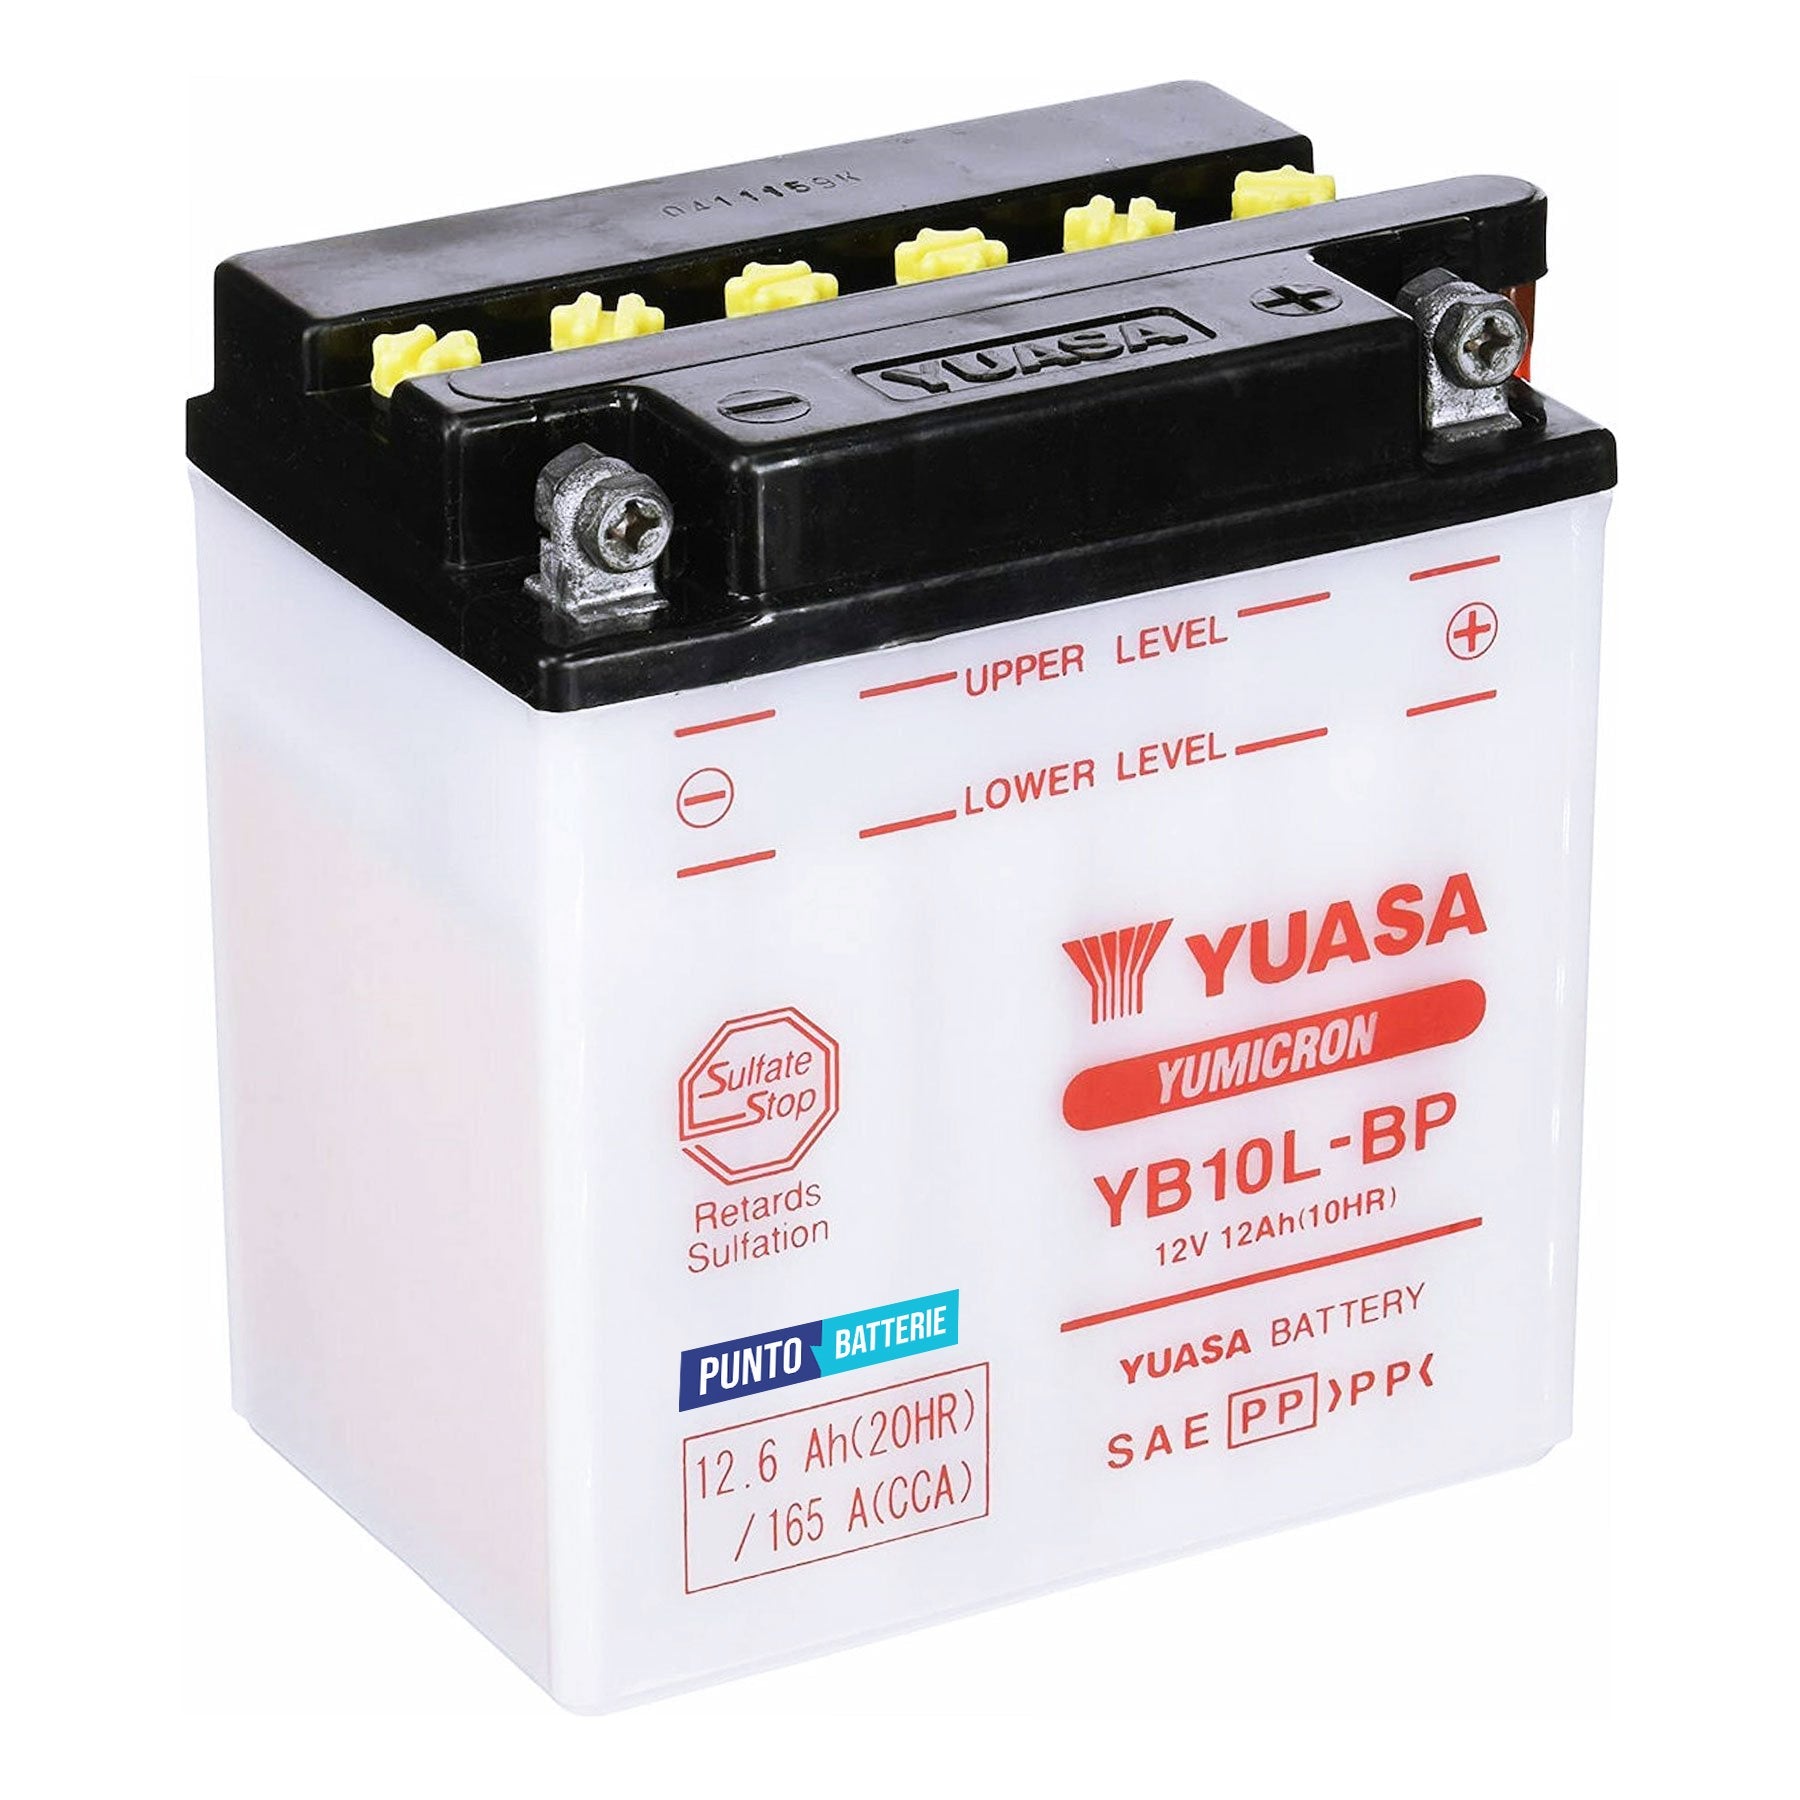 Batteria originale Yuasa YuMicron YB10L-BP, dimensioni 135 x 90 x 145, polo positivo a destra, 12 volt, 12 amperora, 165 ampere. Batteria per moto, scooter e powersport.